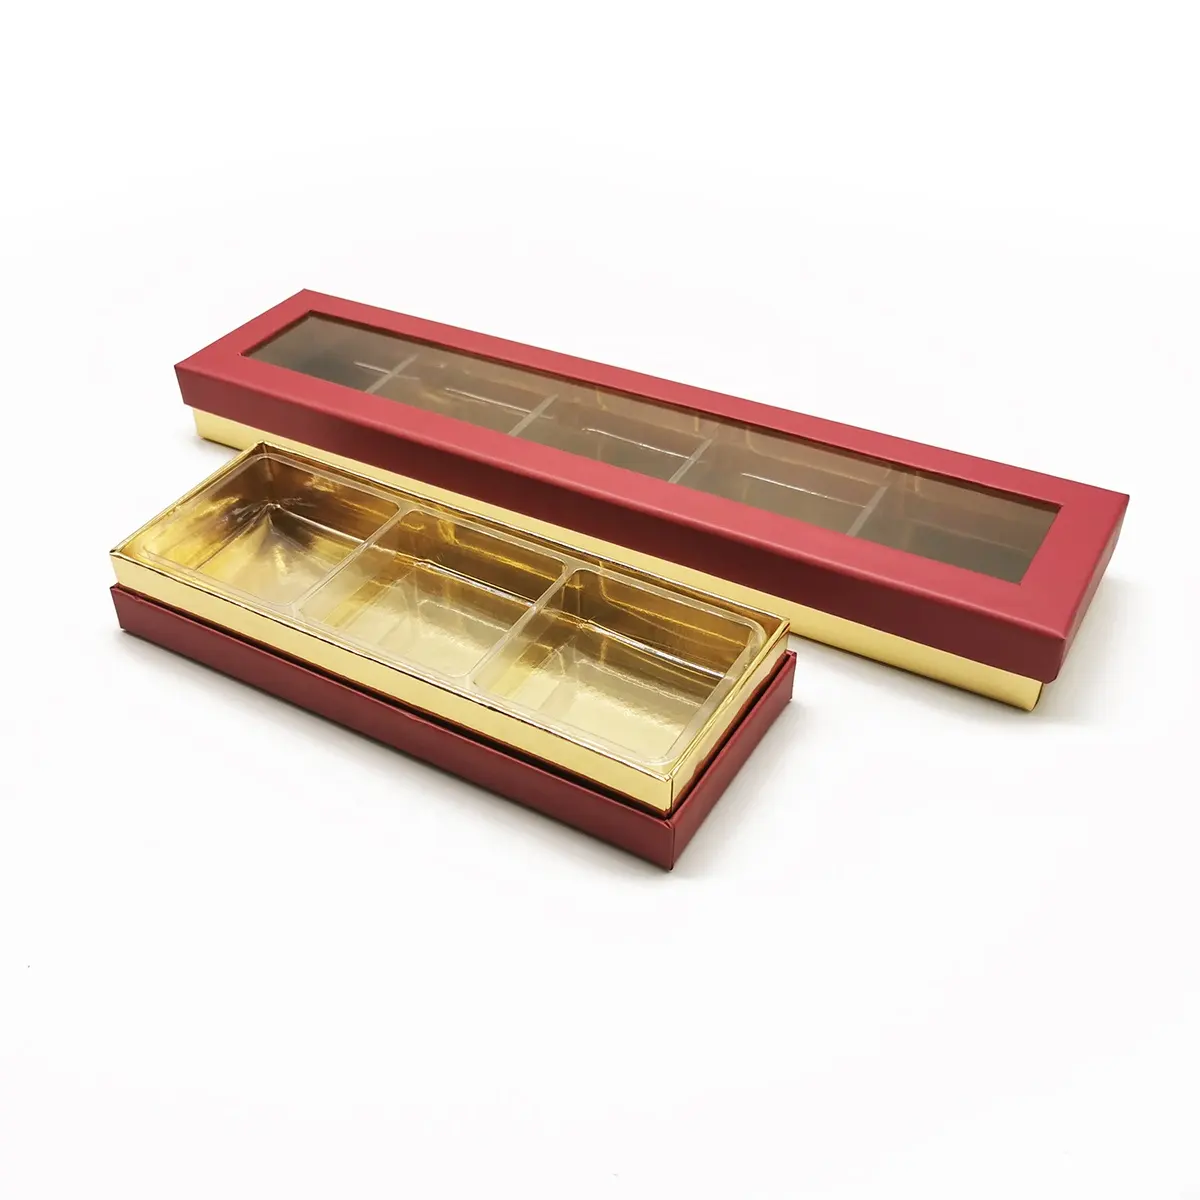 चॉकलेट उपहार पैकिंग के लिए खिड़की के साथ फैशन लक्जरी कस्टम डिजाइन चॉकलेट उपहार बॉक्स कैंडी पेपर उपहार बॉक्स